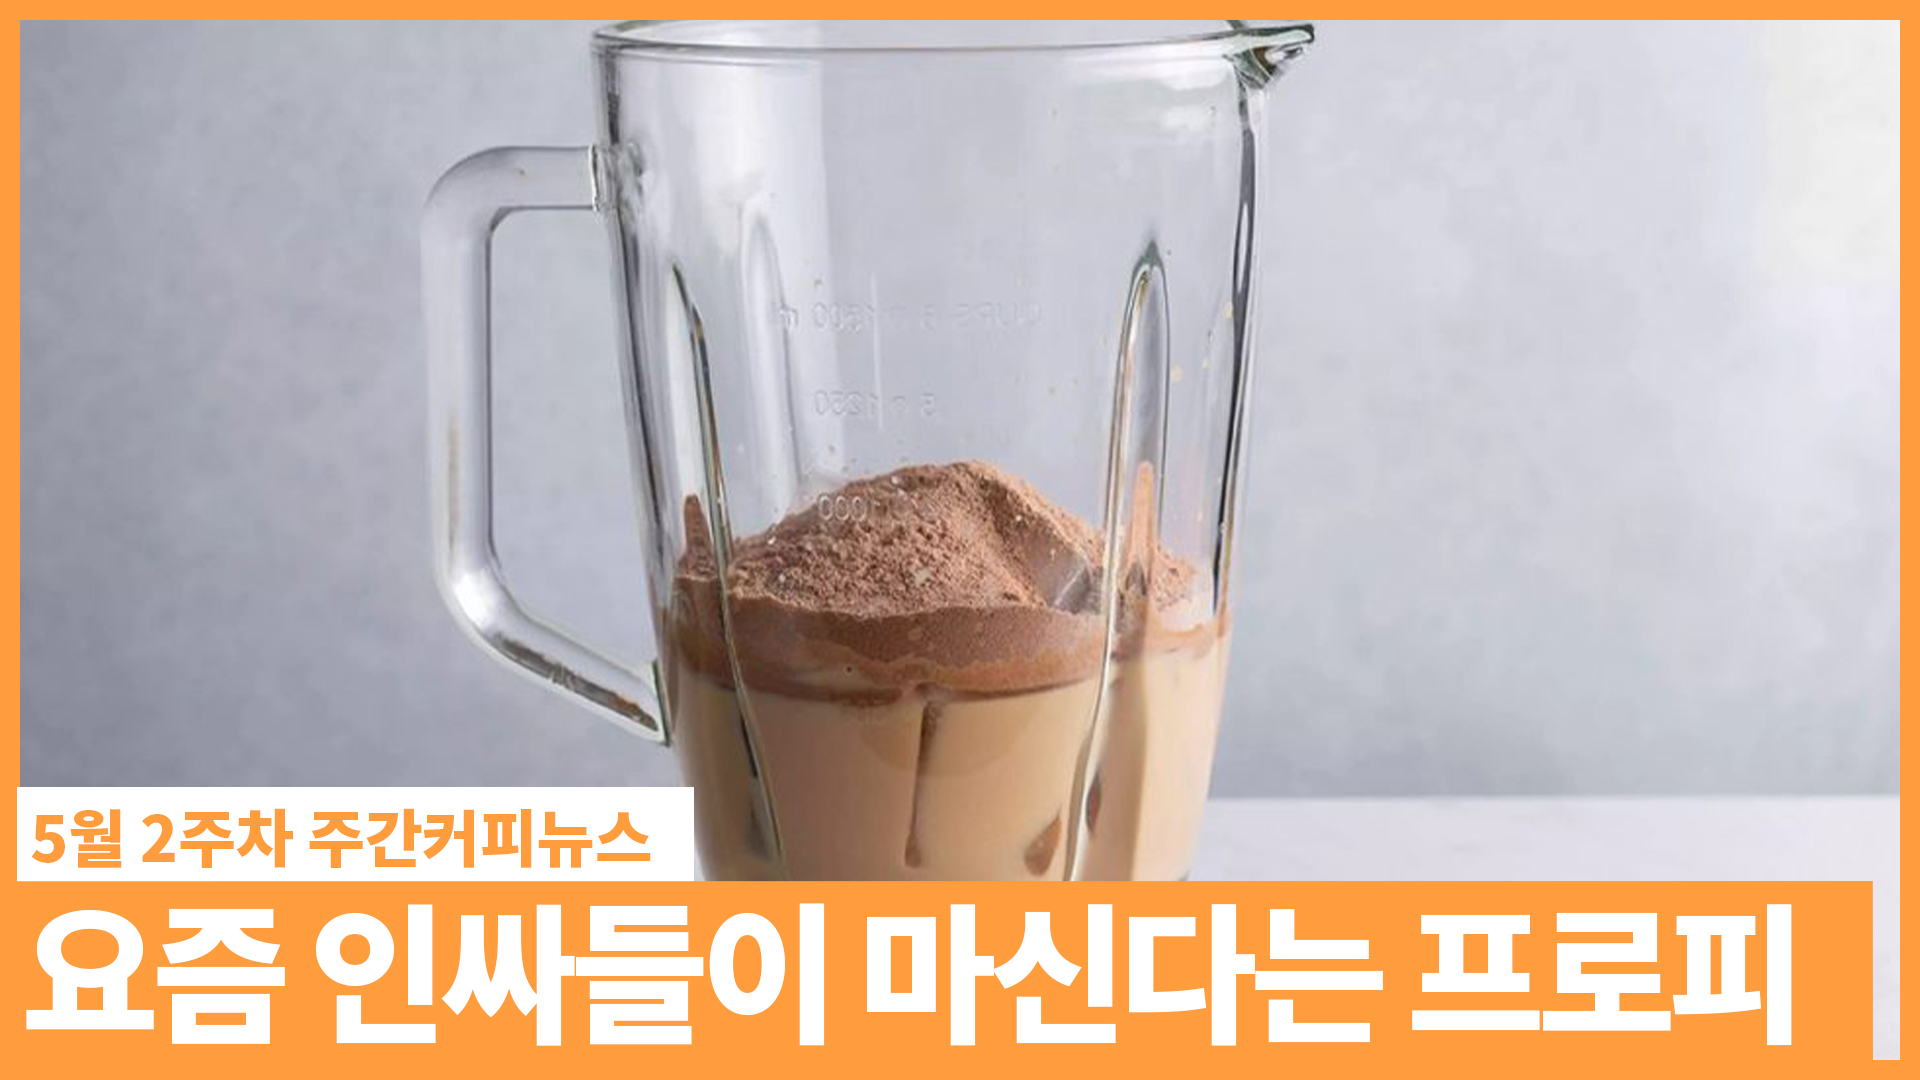 틱톡에서 난리난 커피 레시피, 프로피(proffee) / 5월 2주 주간커피뉴스, 커피TV